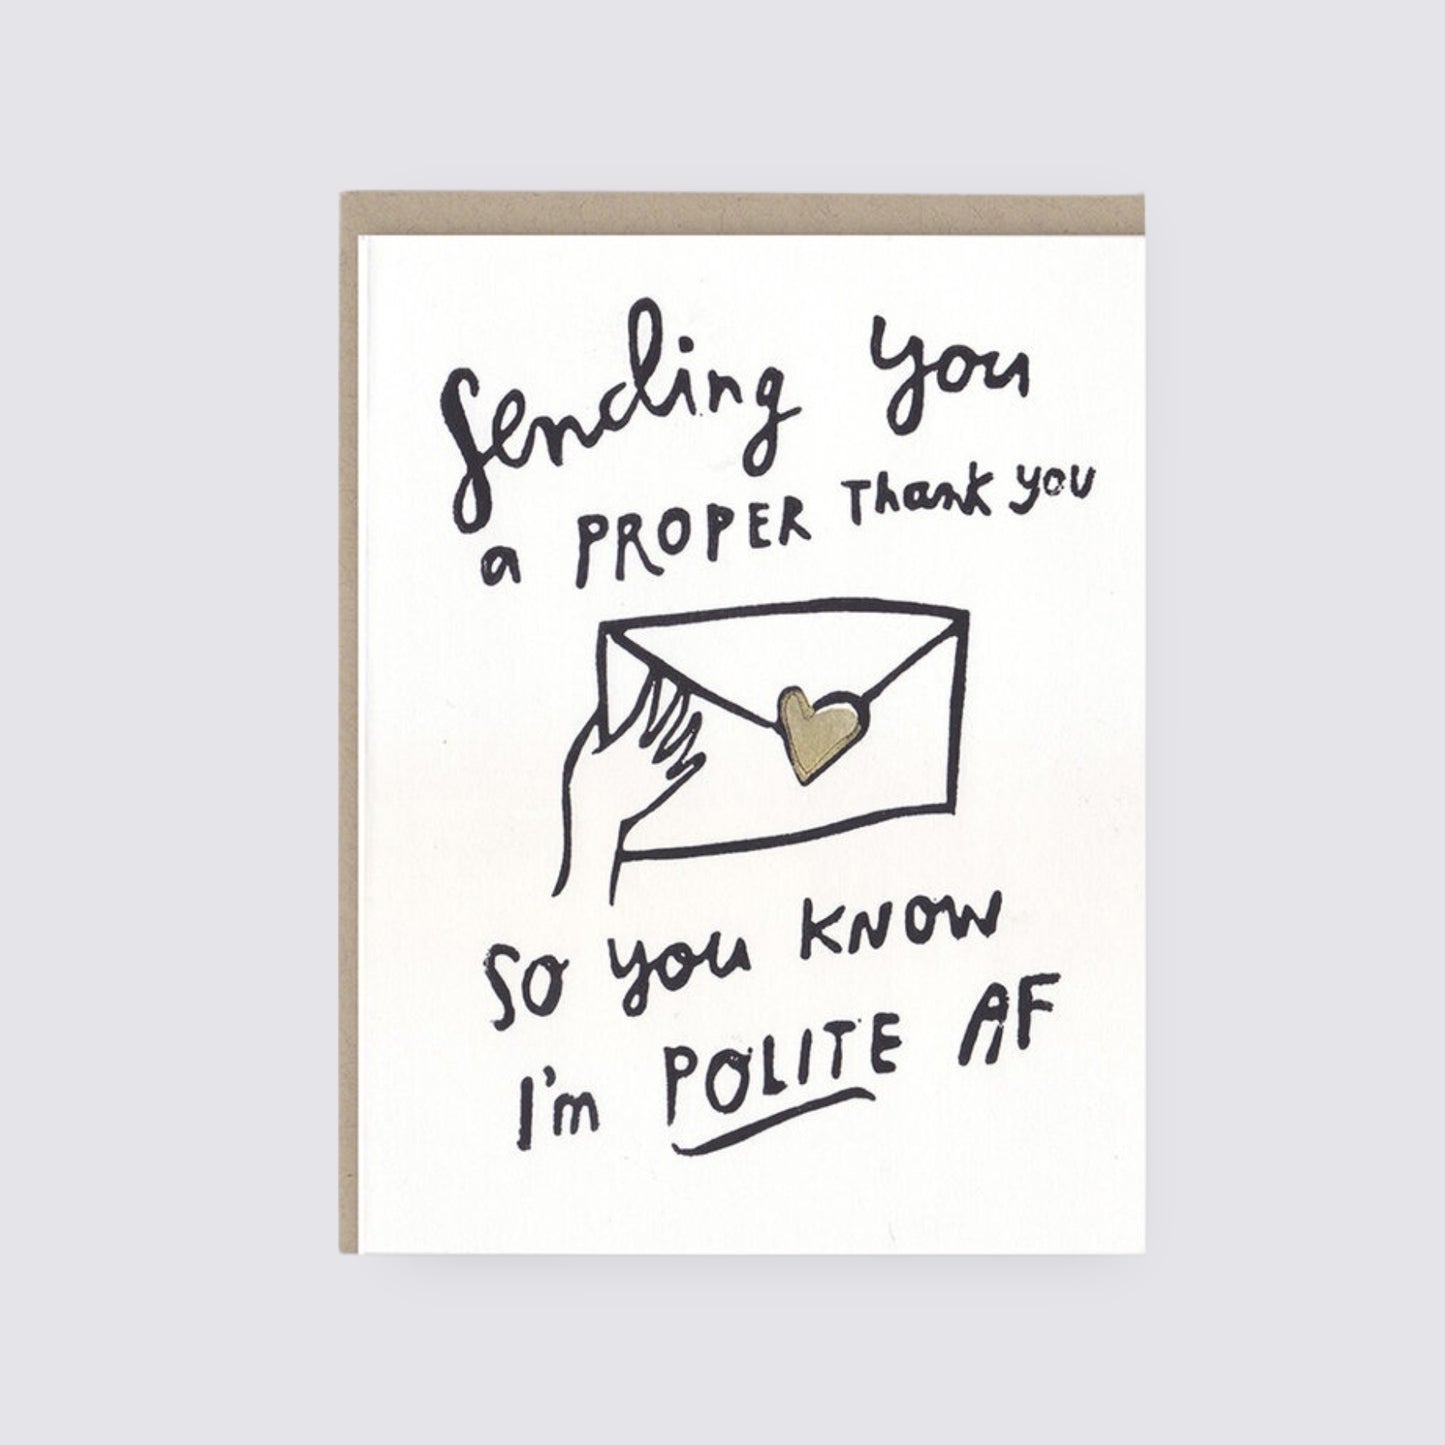 Polite AF thank you card